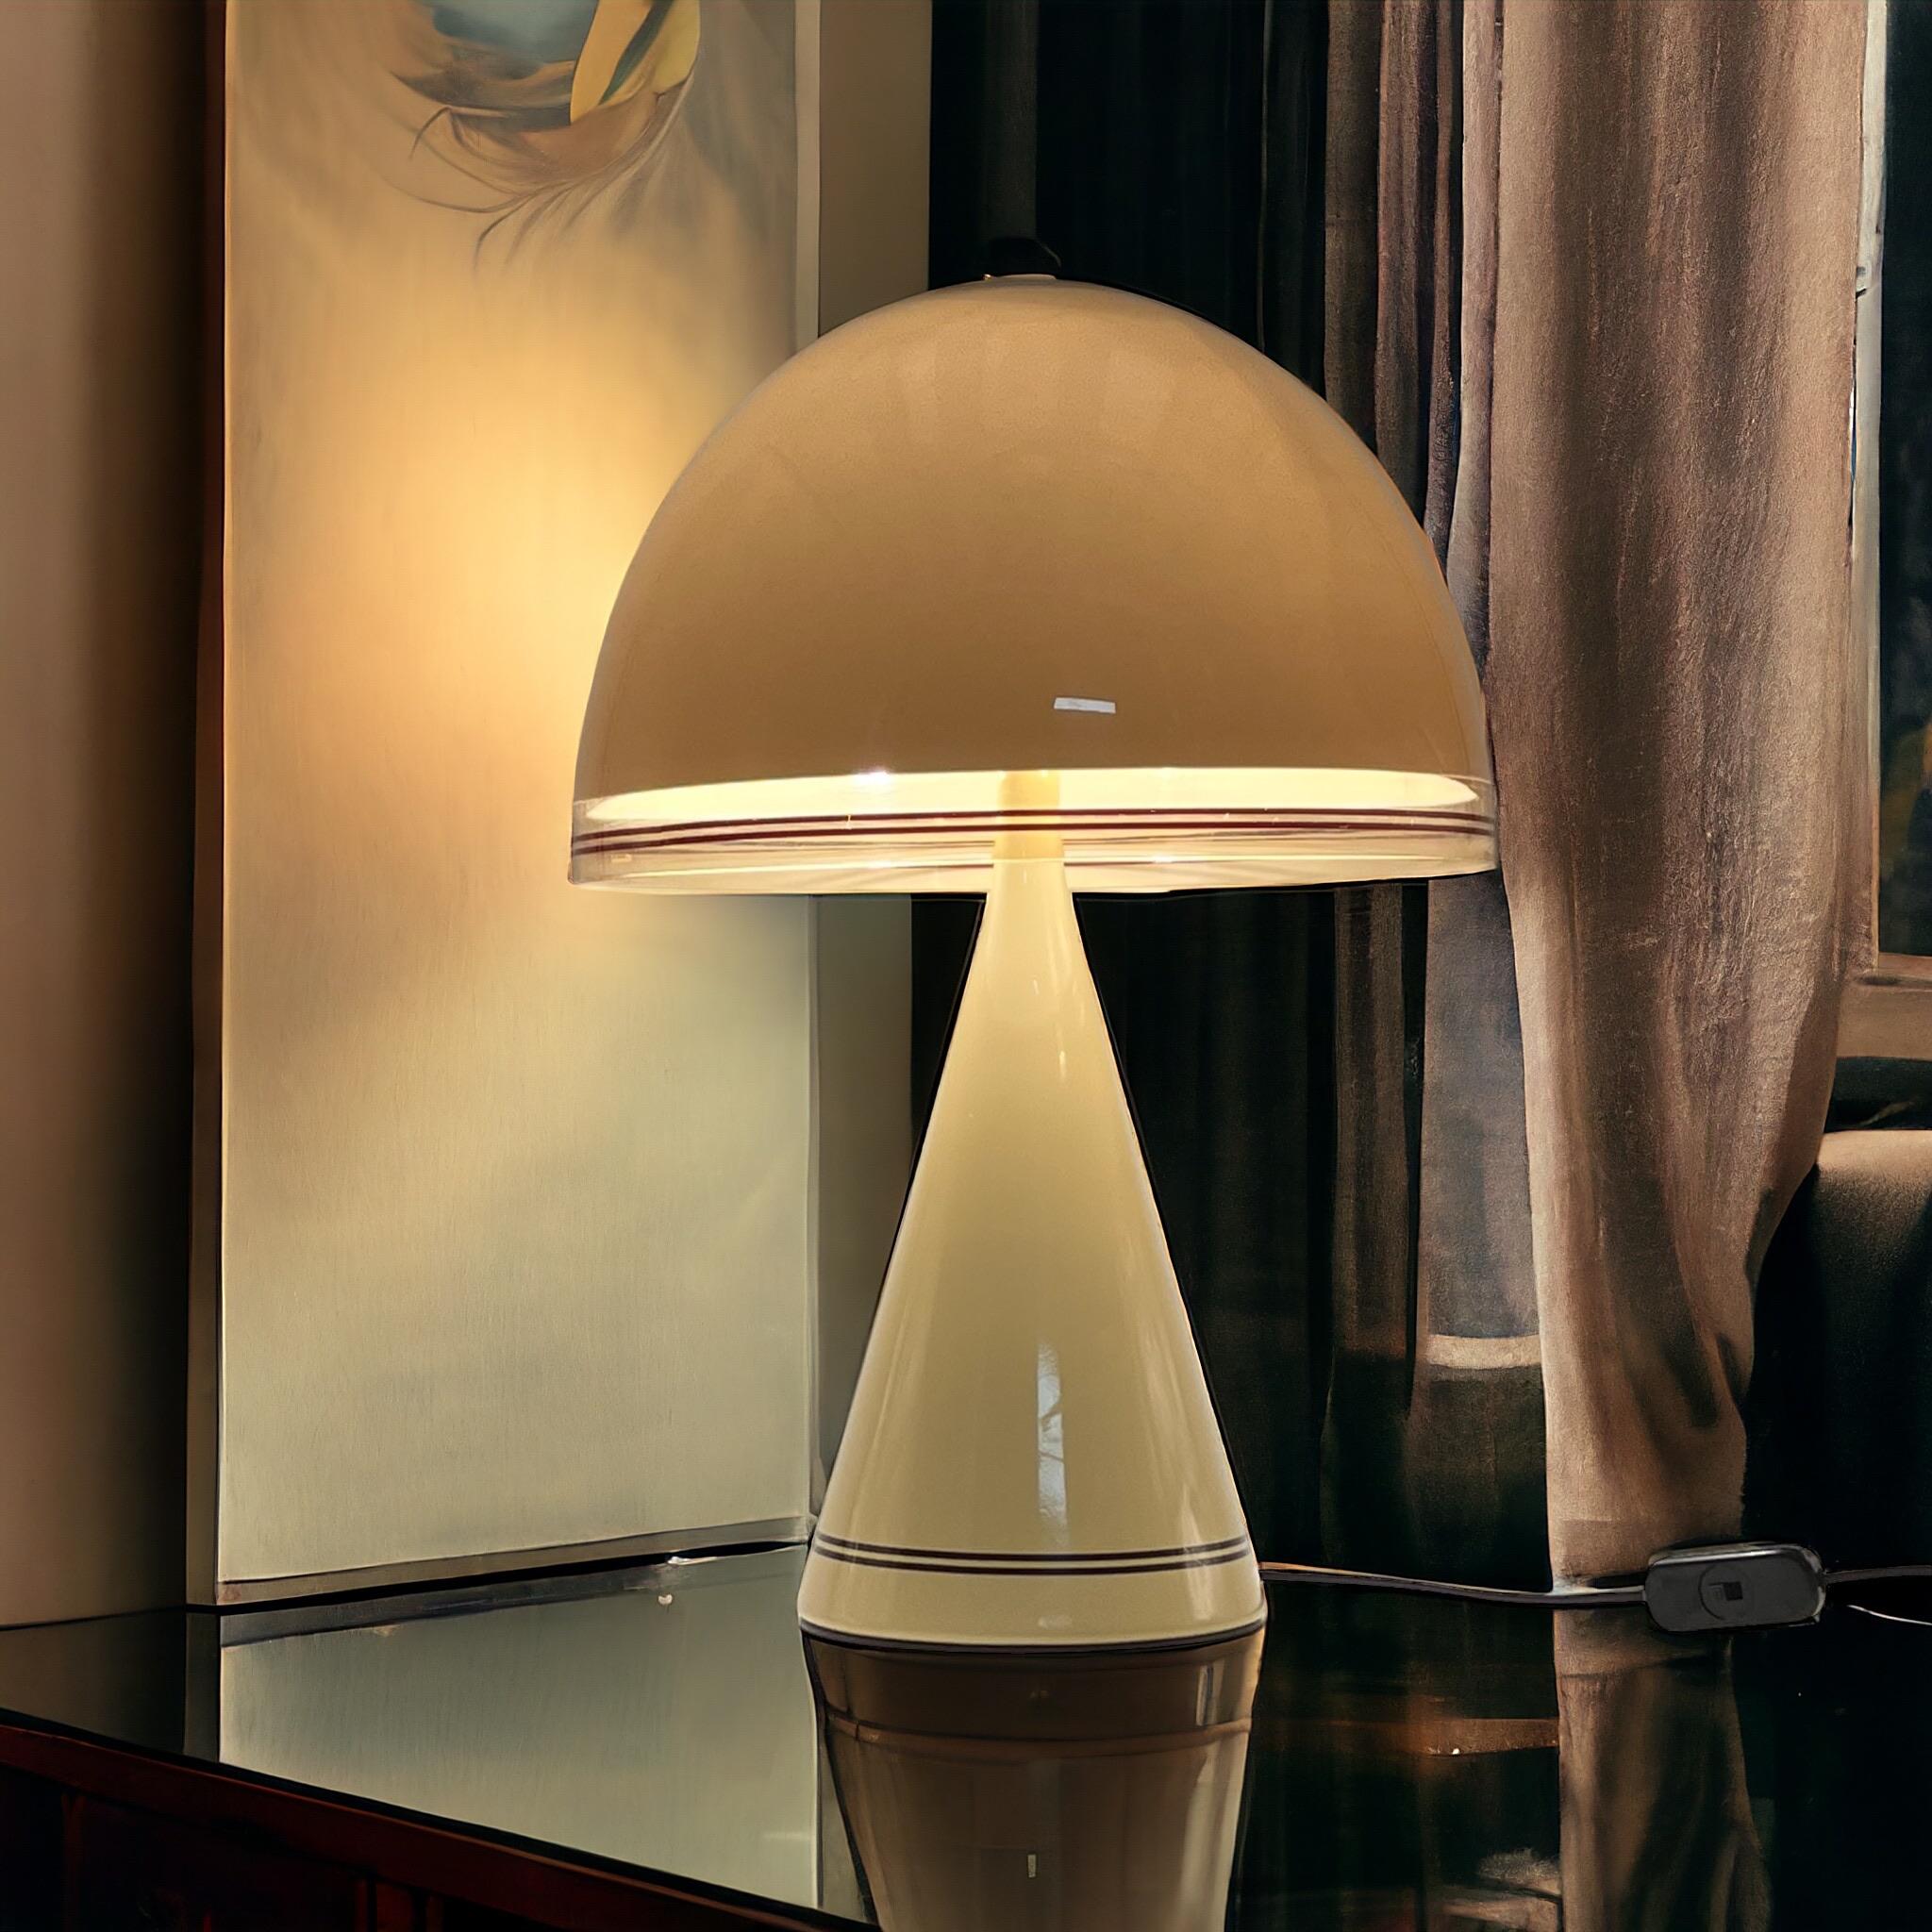 Iconic Mushroom 70s Lamp ‘Baobab’ by iGuzzini - Italian Space Age Iconic Lamp 3